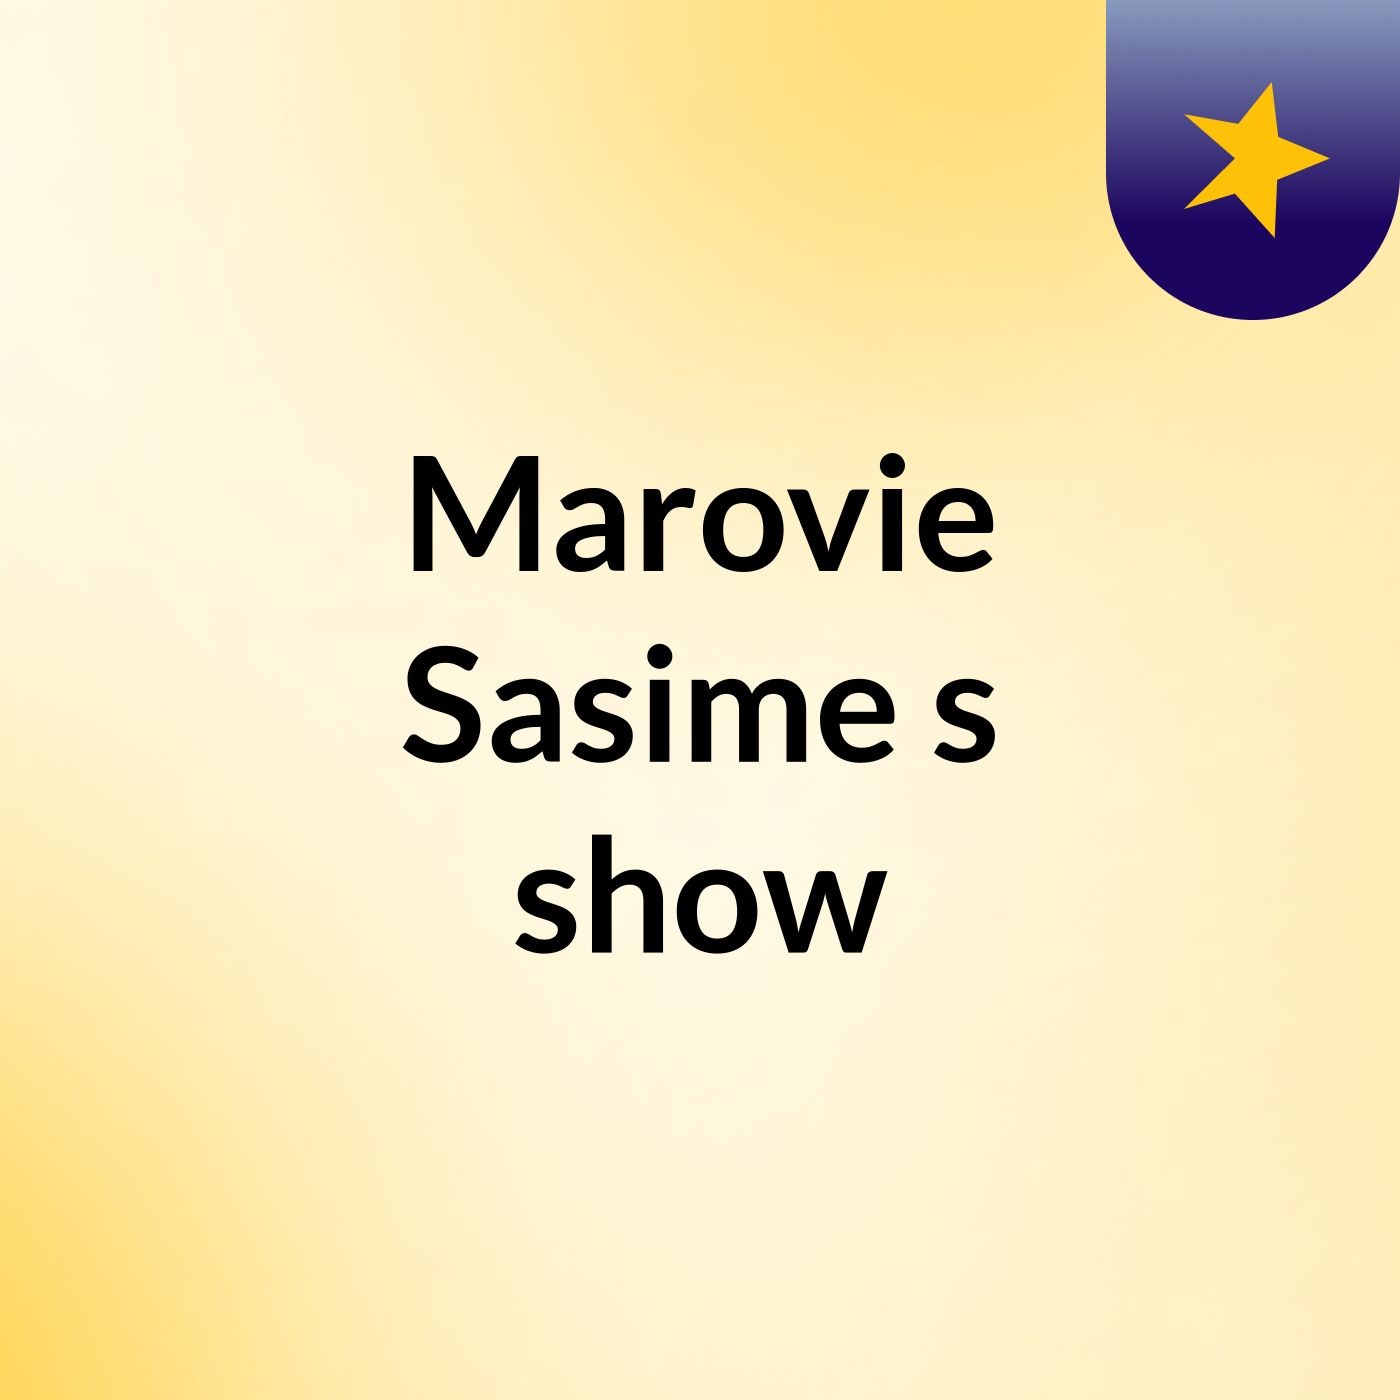 Marovie Sasime's show